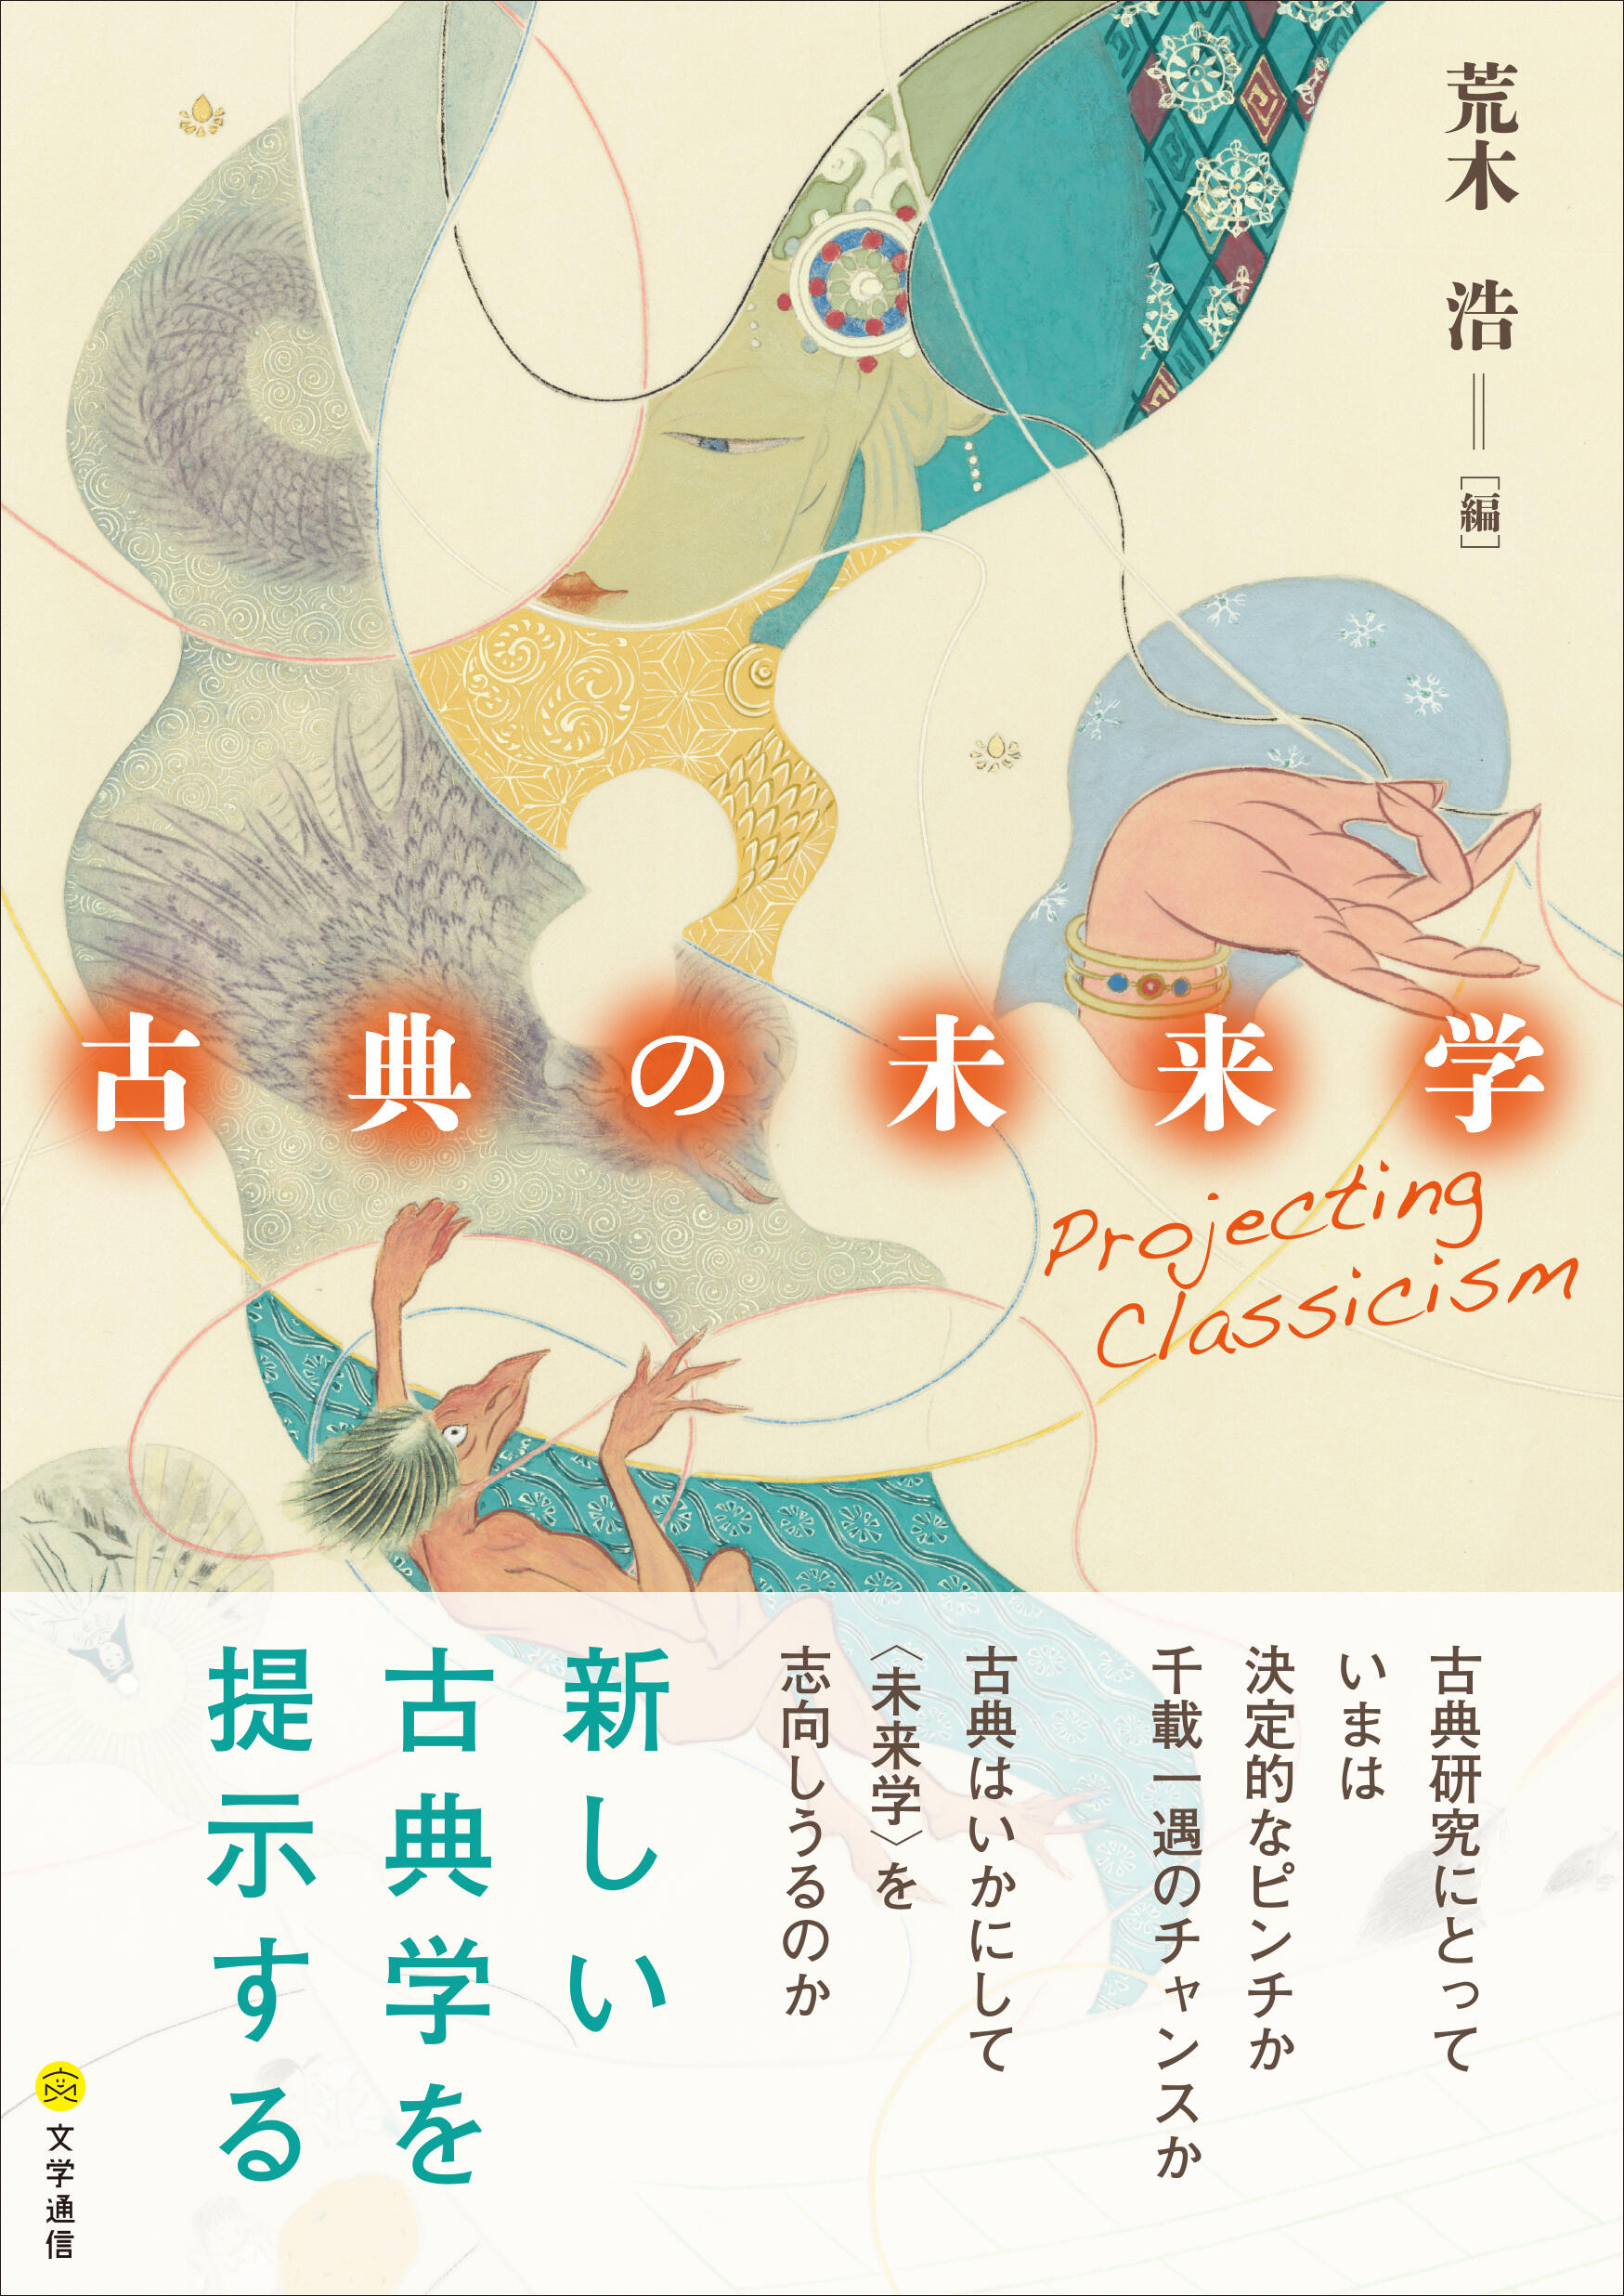 世界文学への招待日本文学における古典と近代 JyFosWIqb4, エンタメ/ホビー - luckaupravasisak.hr